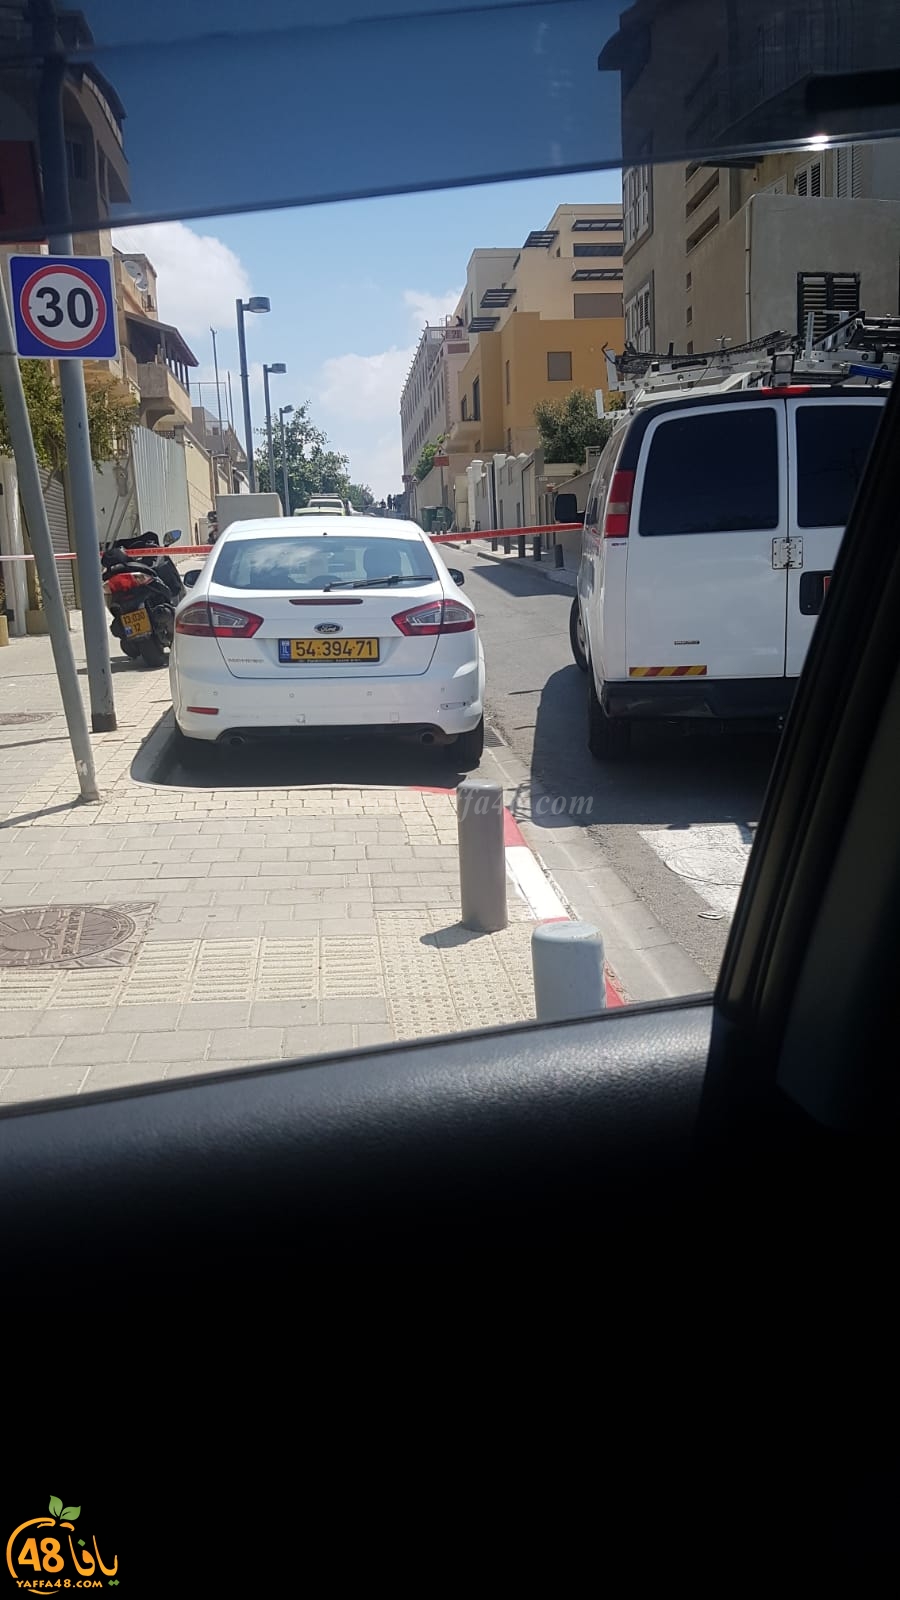  صور: الشرطة تعالج جسماً مشبوهاً داخل مركبة في يافا 